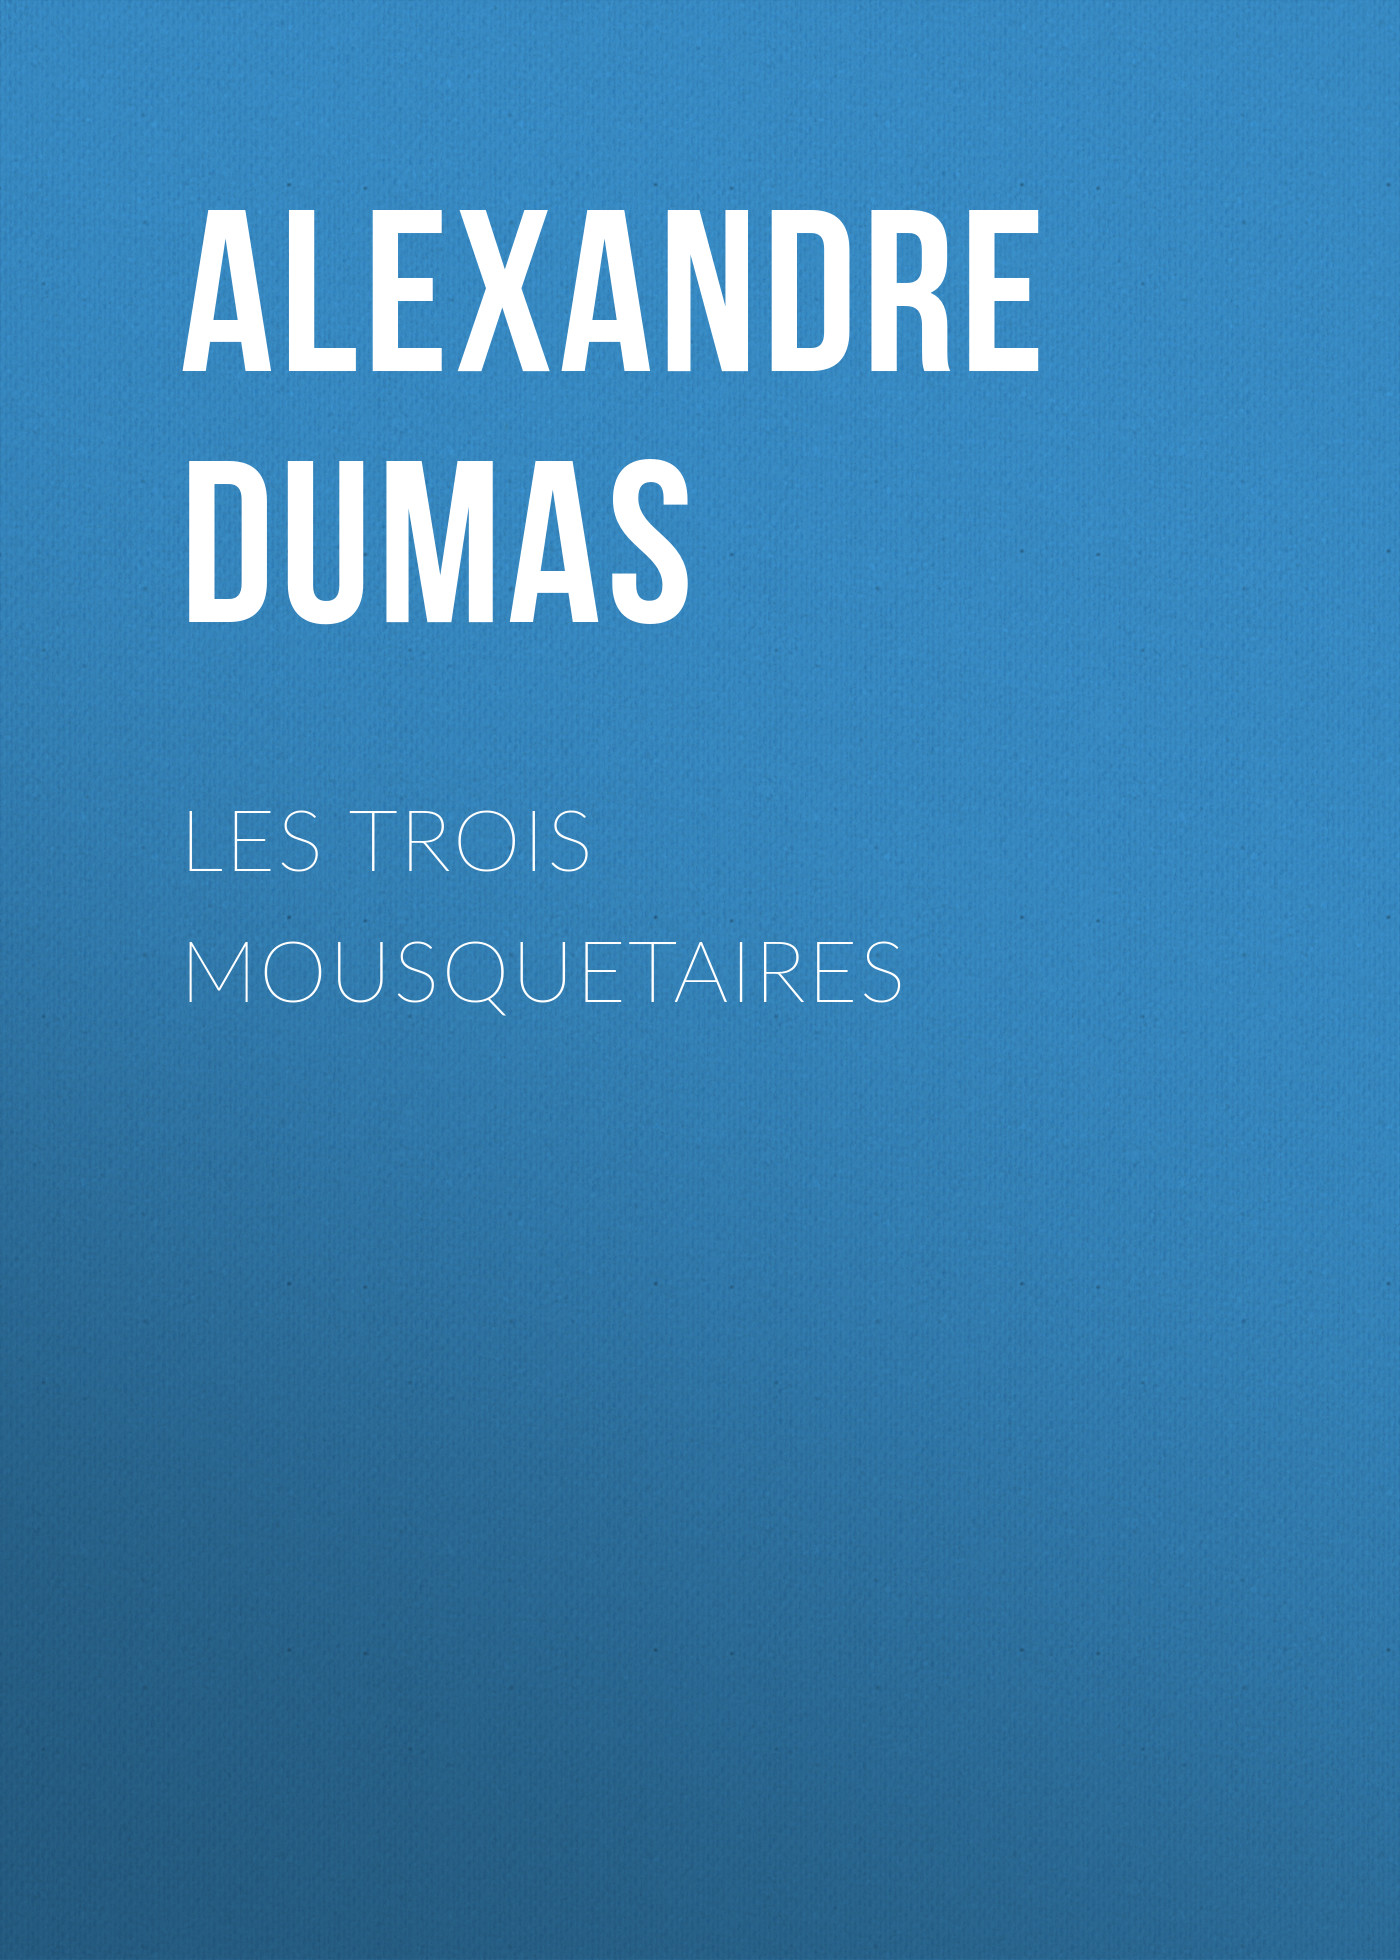 Книга Les trois mousquetaires из серии , созданная Alexandre Dumas, может относится к жанру Зарубежная классика, Зарубежная старинная литература. Стоимость электронной книги Les trois mousquetaires с идентификатором 21104654 составляет 5.99 руб.